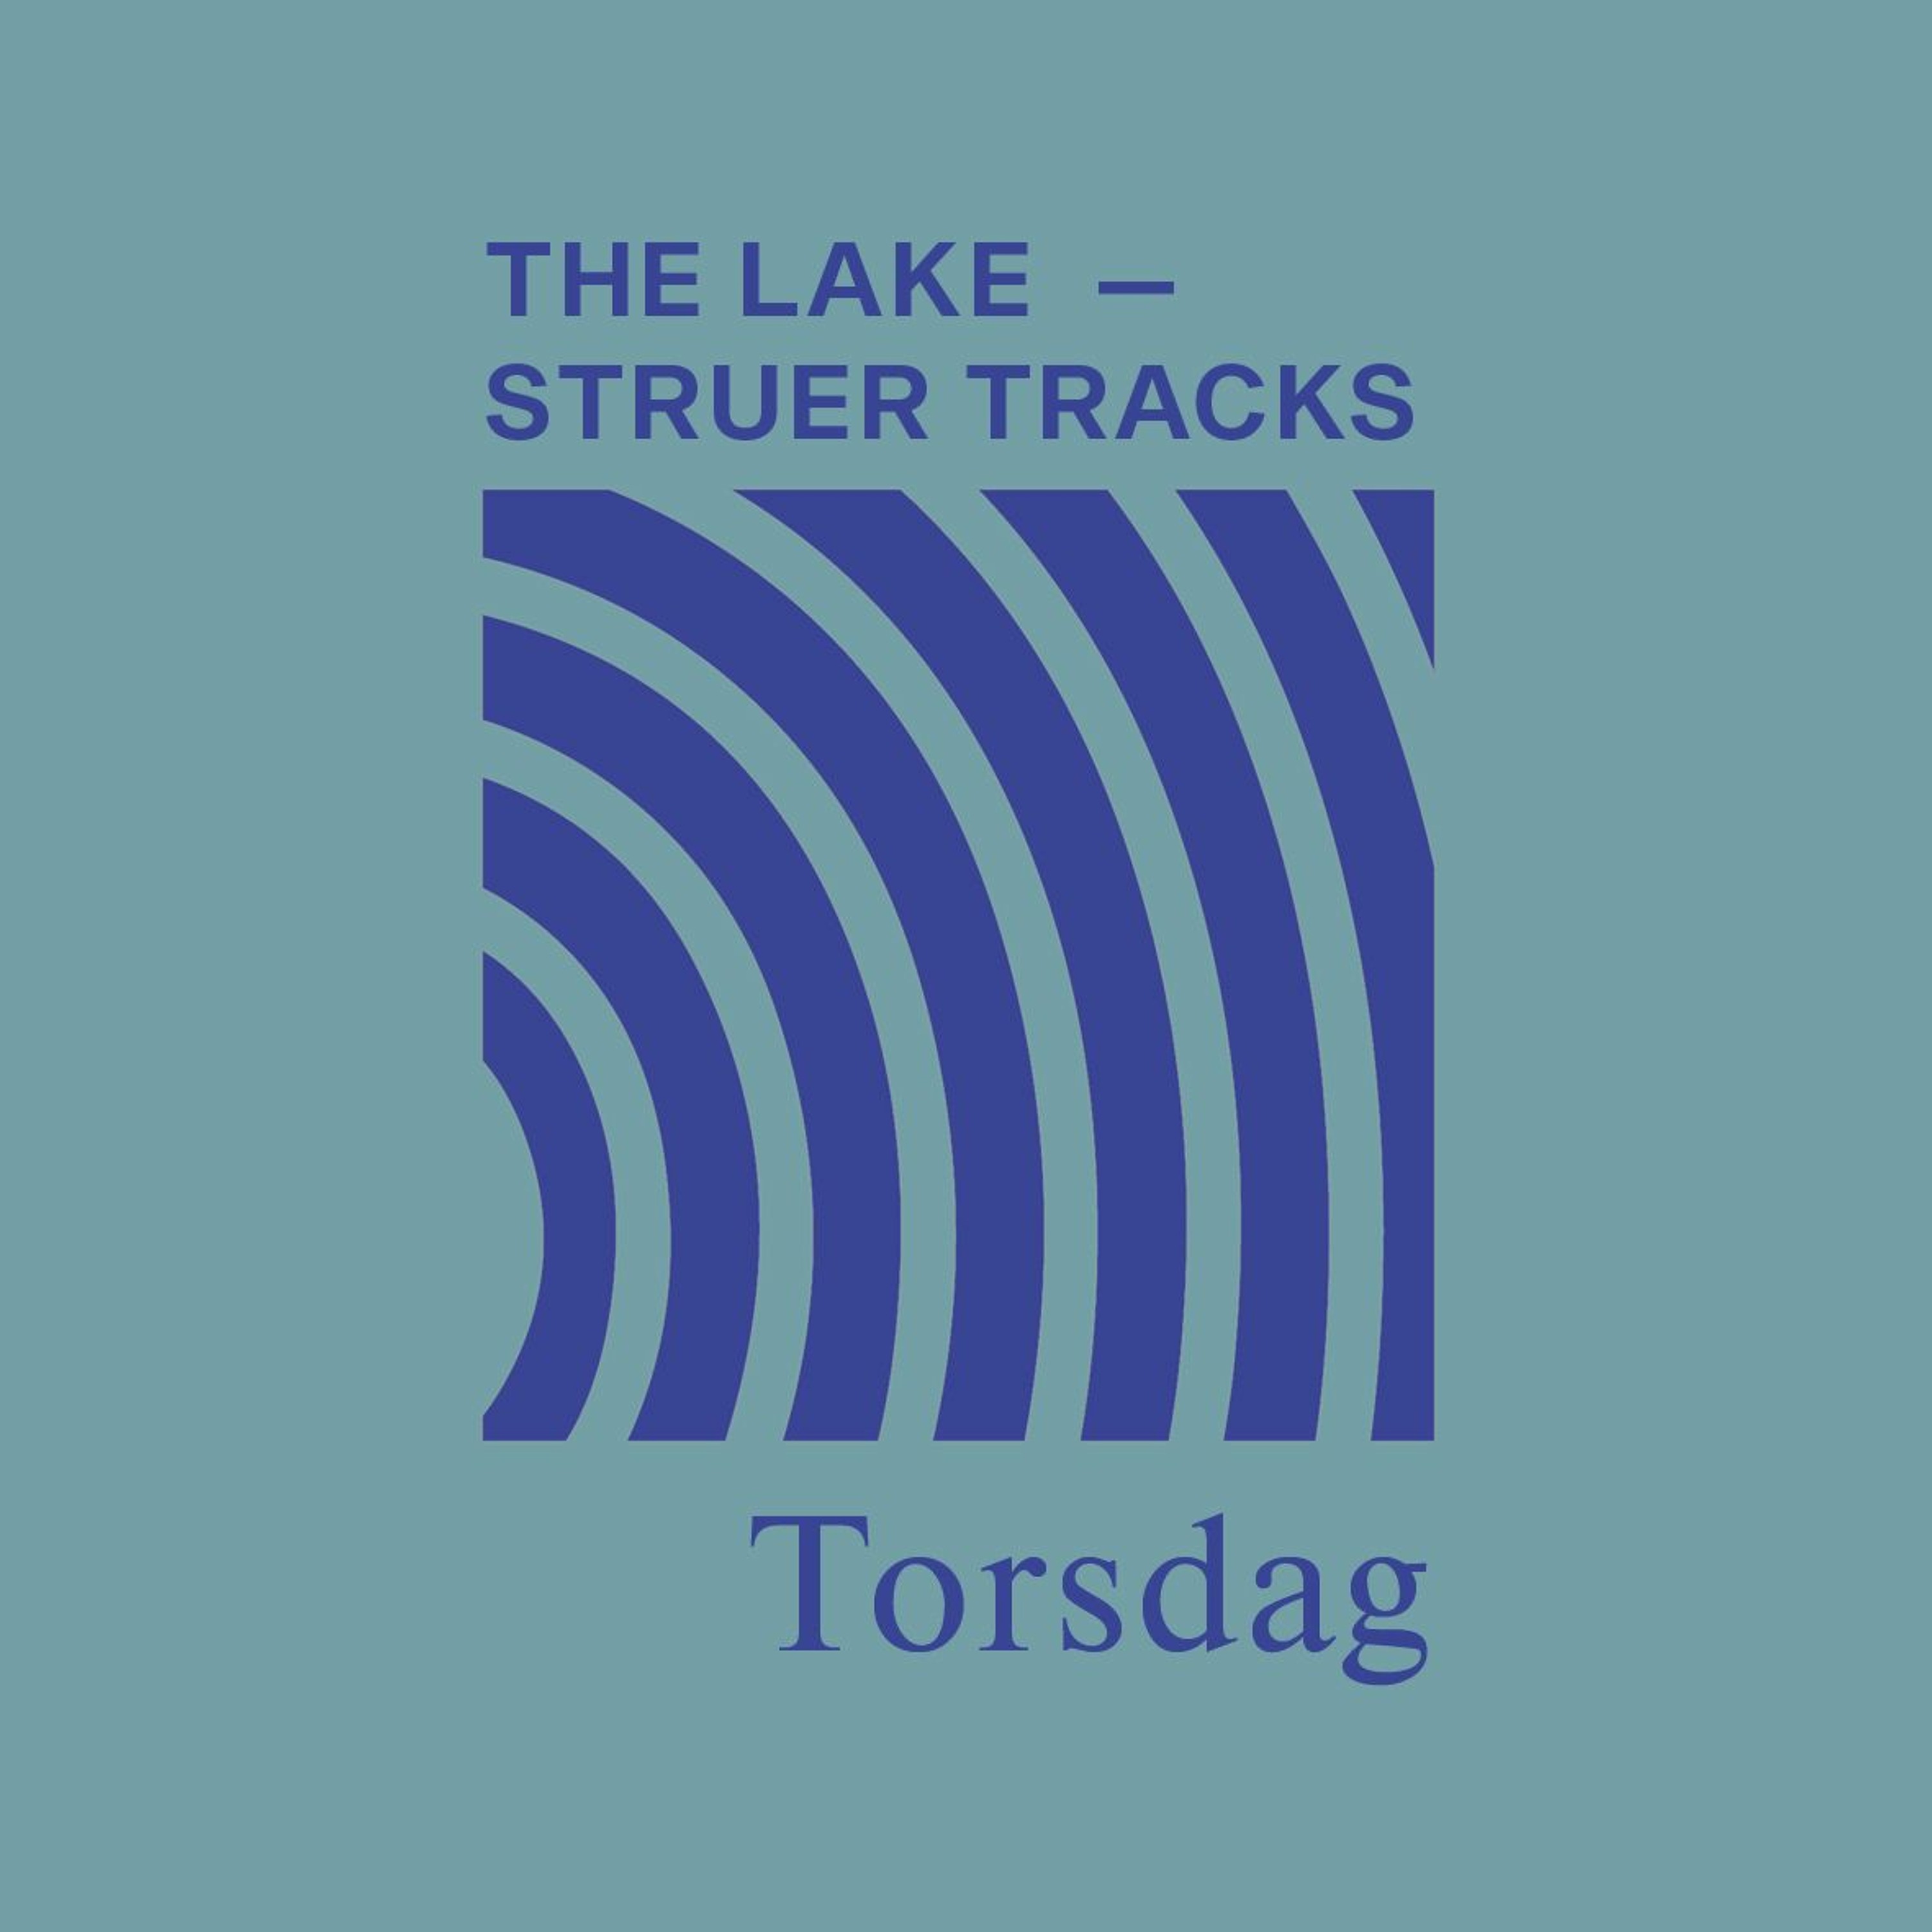 The Lake ⏤ Struer Tracks: Torsdag